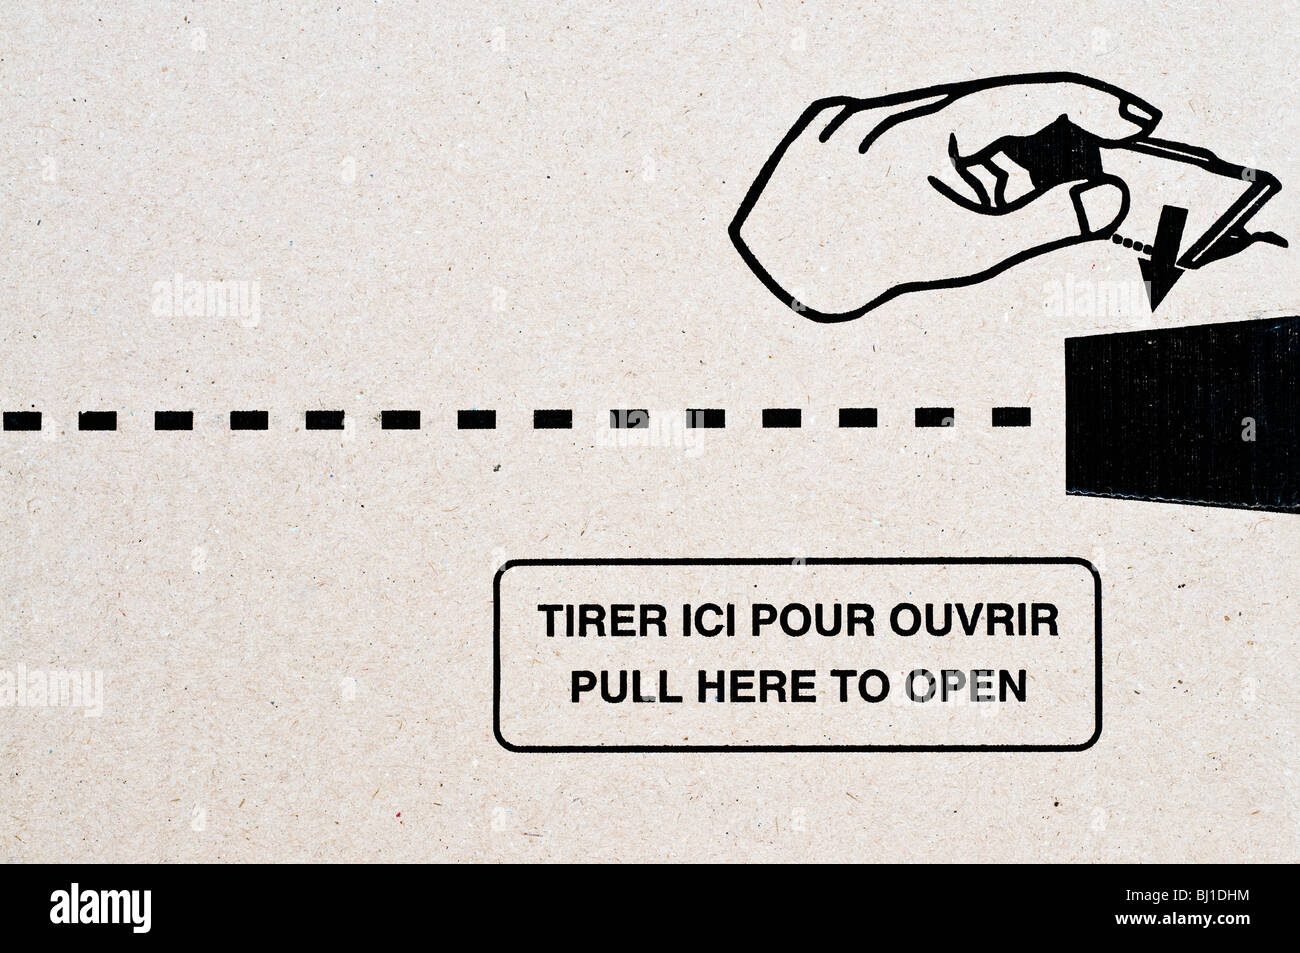 Französisch / Englisch Sprache Karton öffnen Informationen. Stockfoto